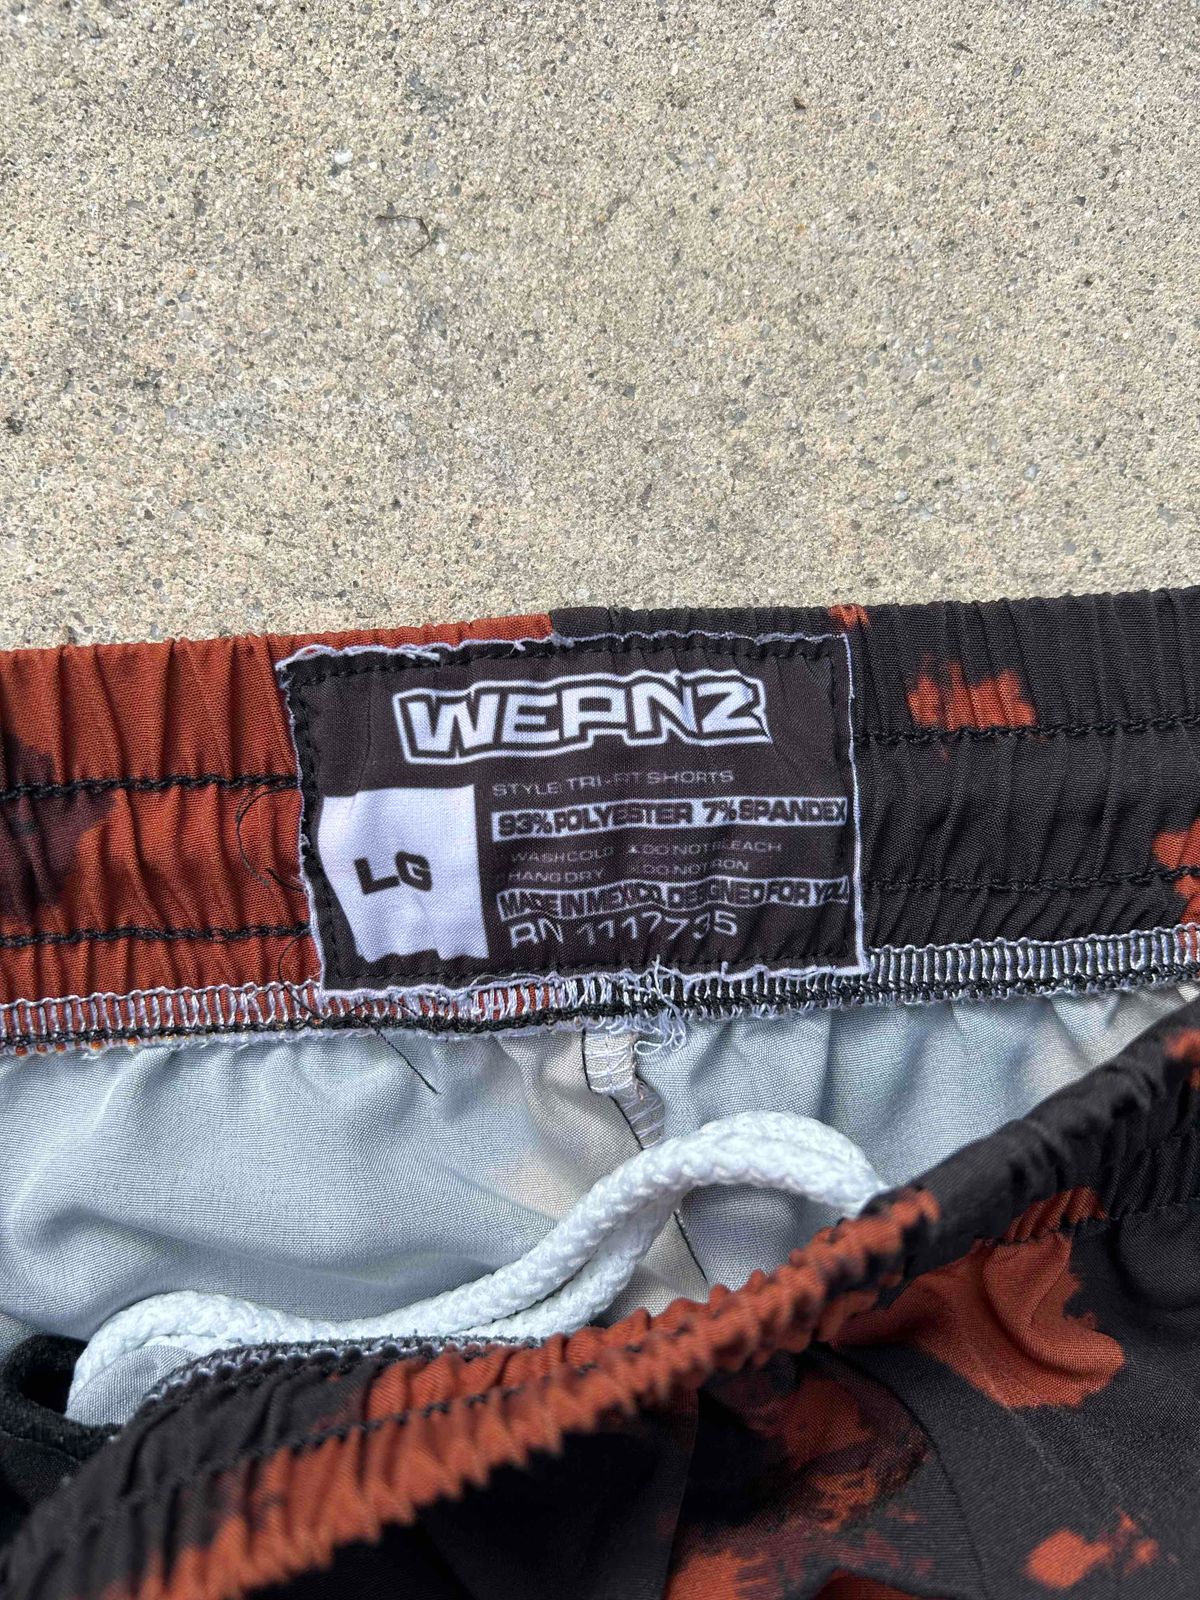 WEPNZ Athletic Shorts 